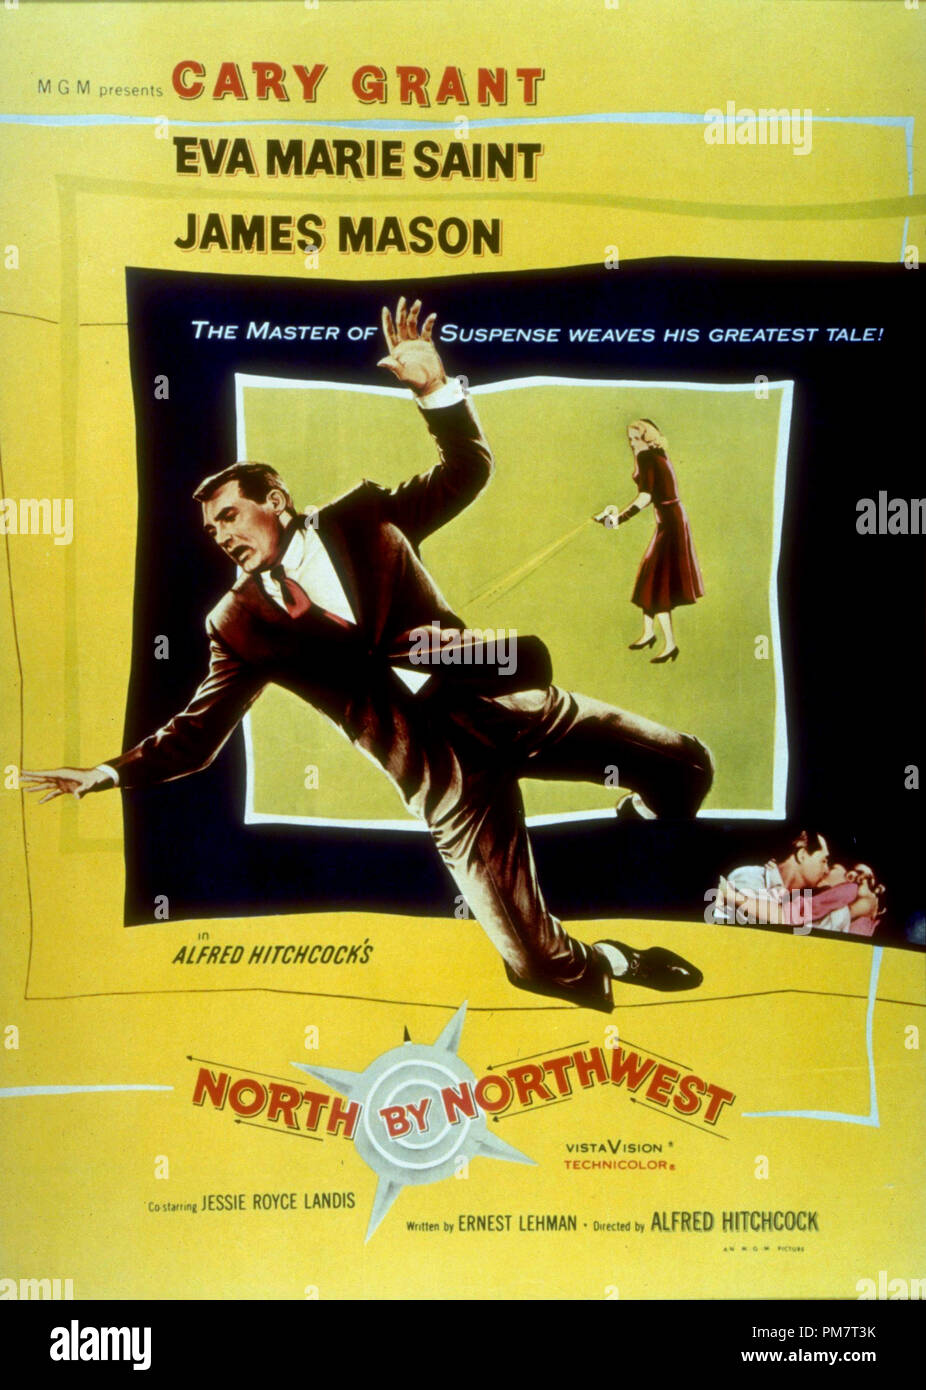 Film Artwork von "Norden durch Northwest 'Poster 1959 MGM Datei Referenz # 31386 535 THA Stockfoto